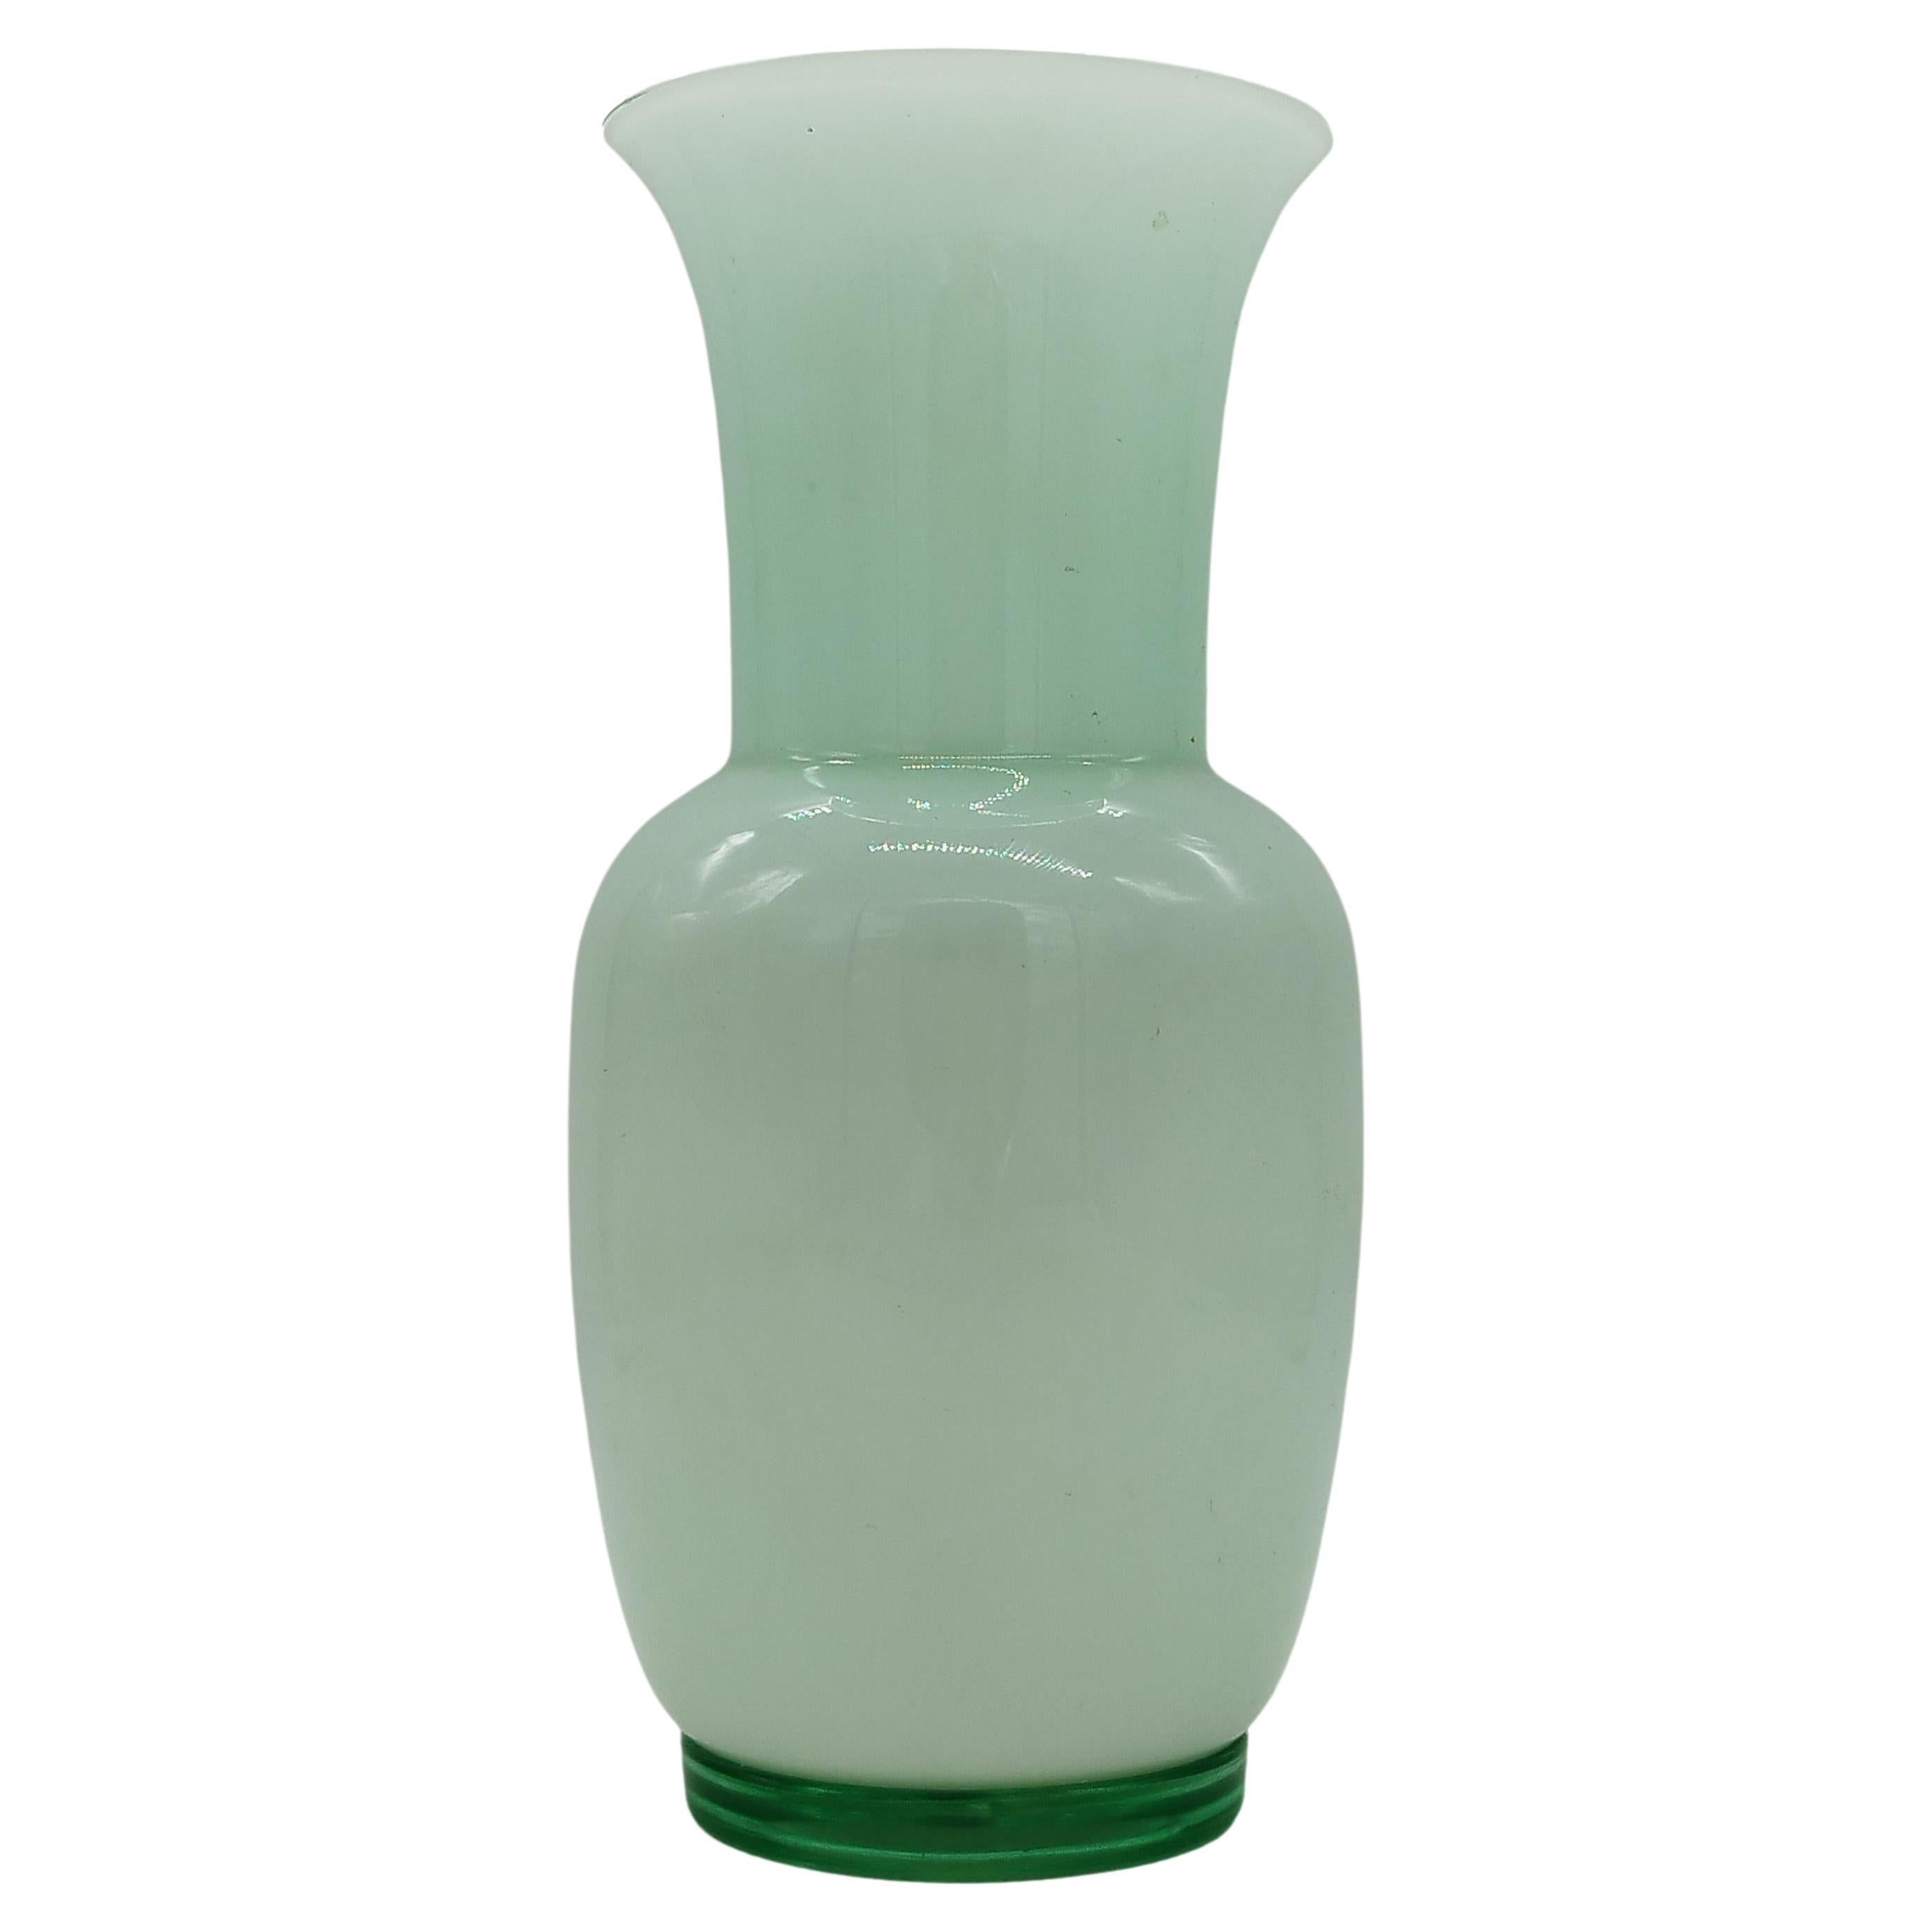 Tommaso Buzzi for Venini "Incamiciato" Green Murano Glass Vase, Italy, 1985